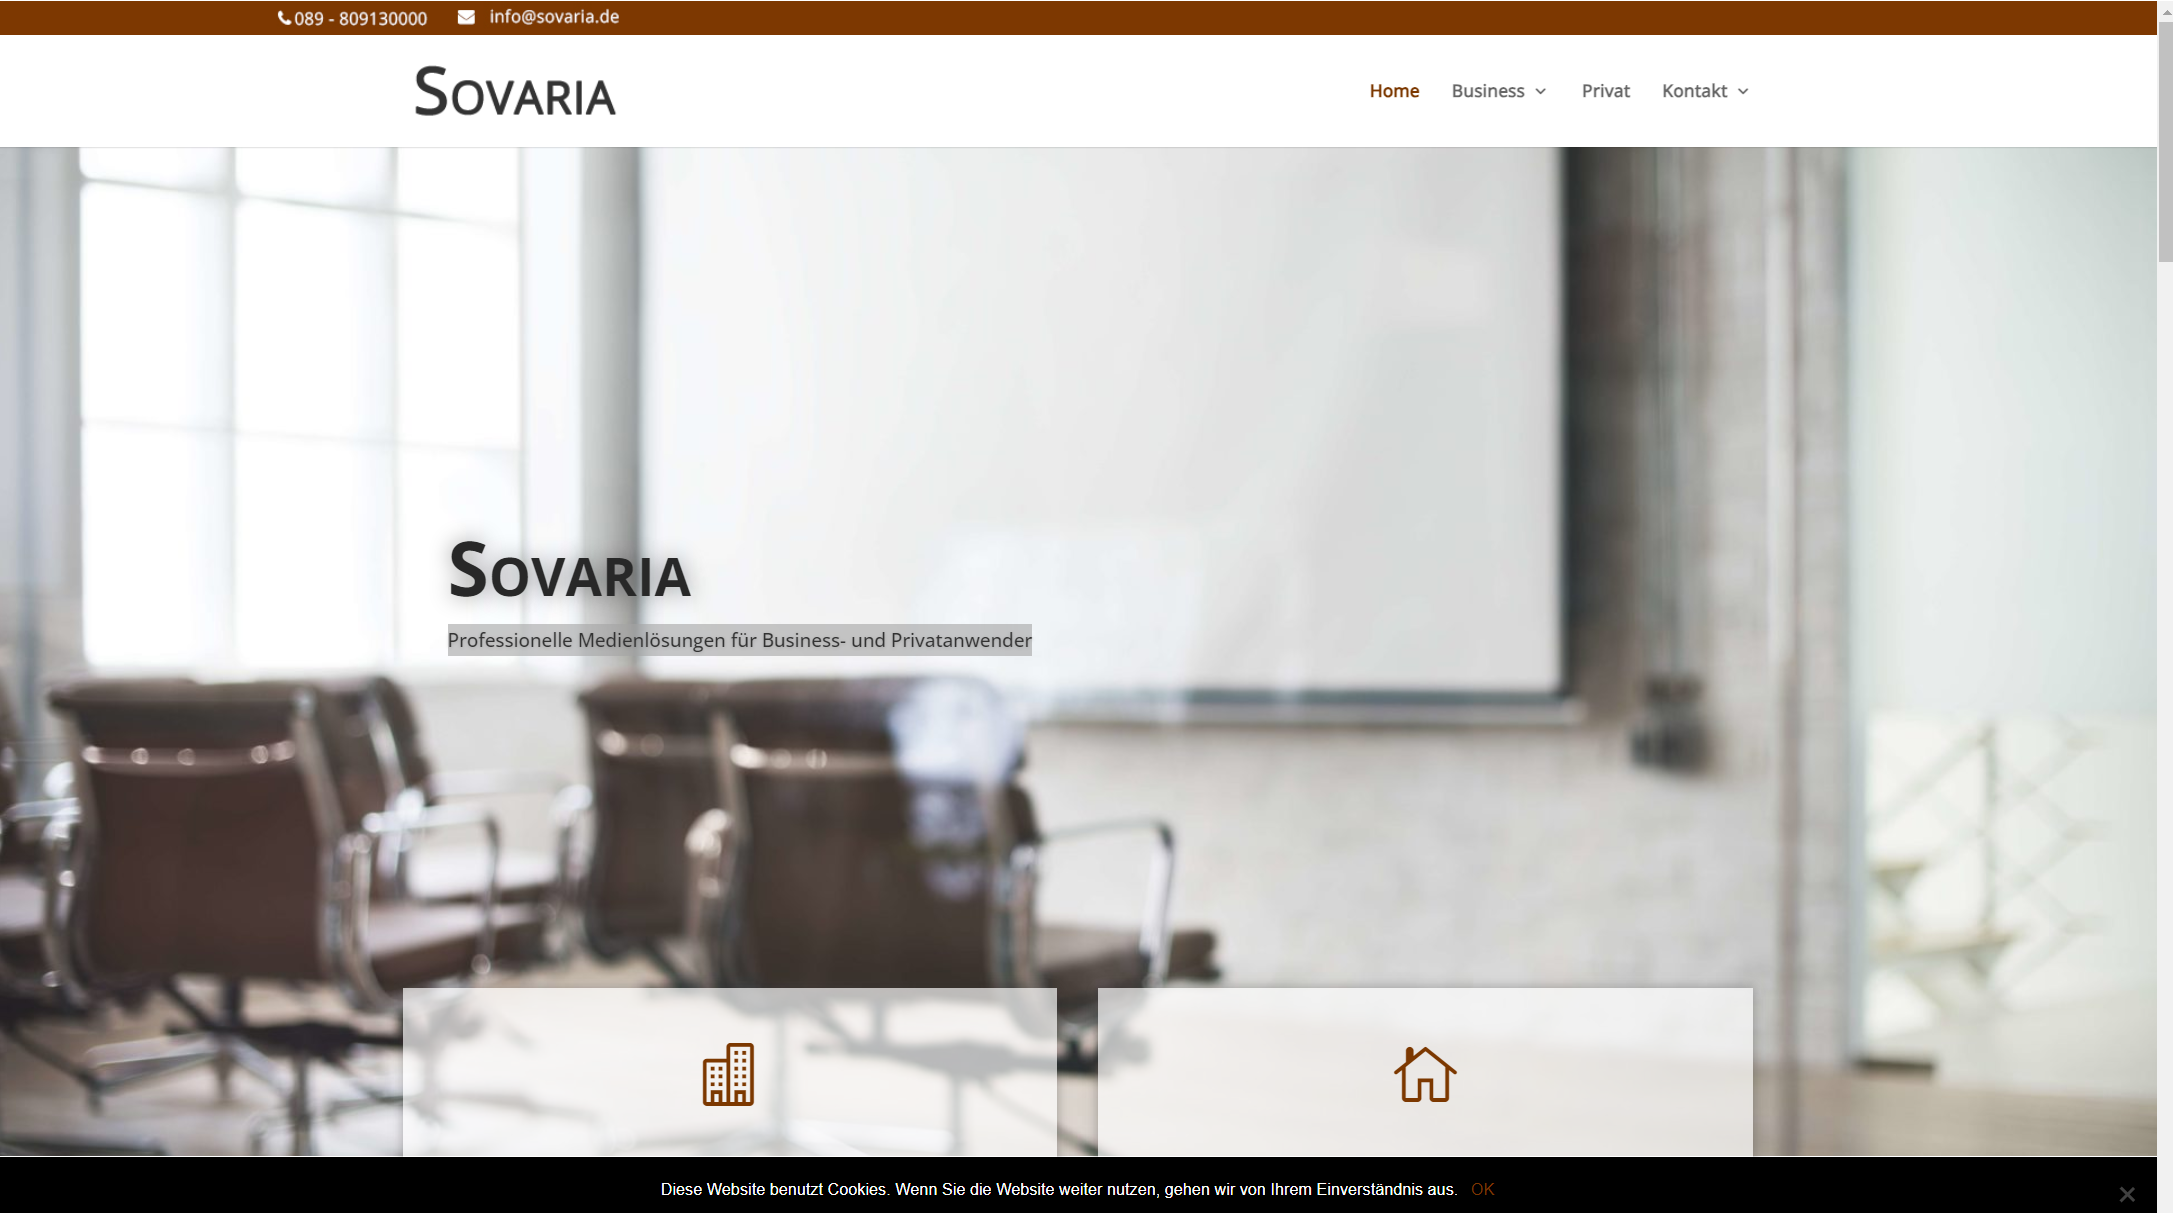 Sovaria - Professionelle Medienlösungen für Business- und Privatanwender